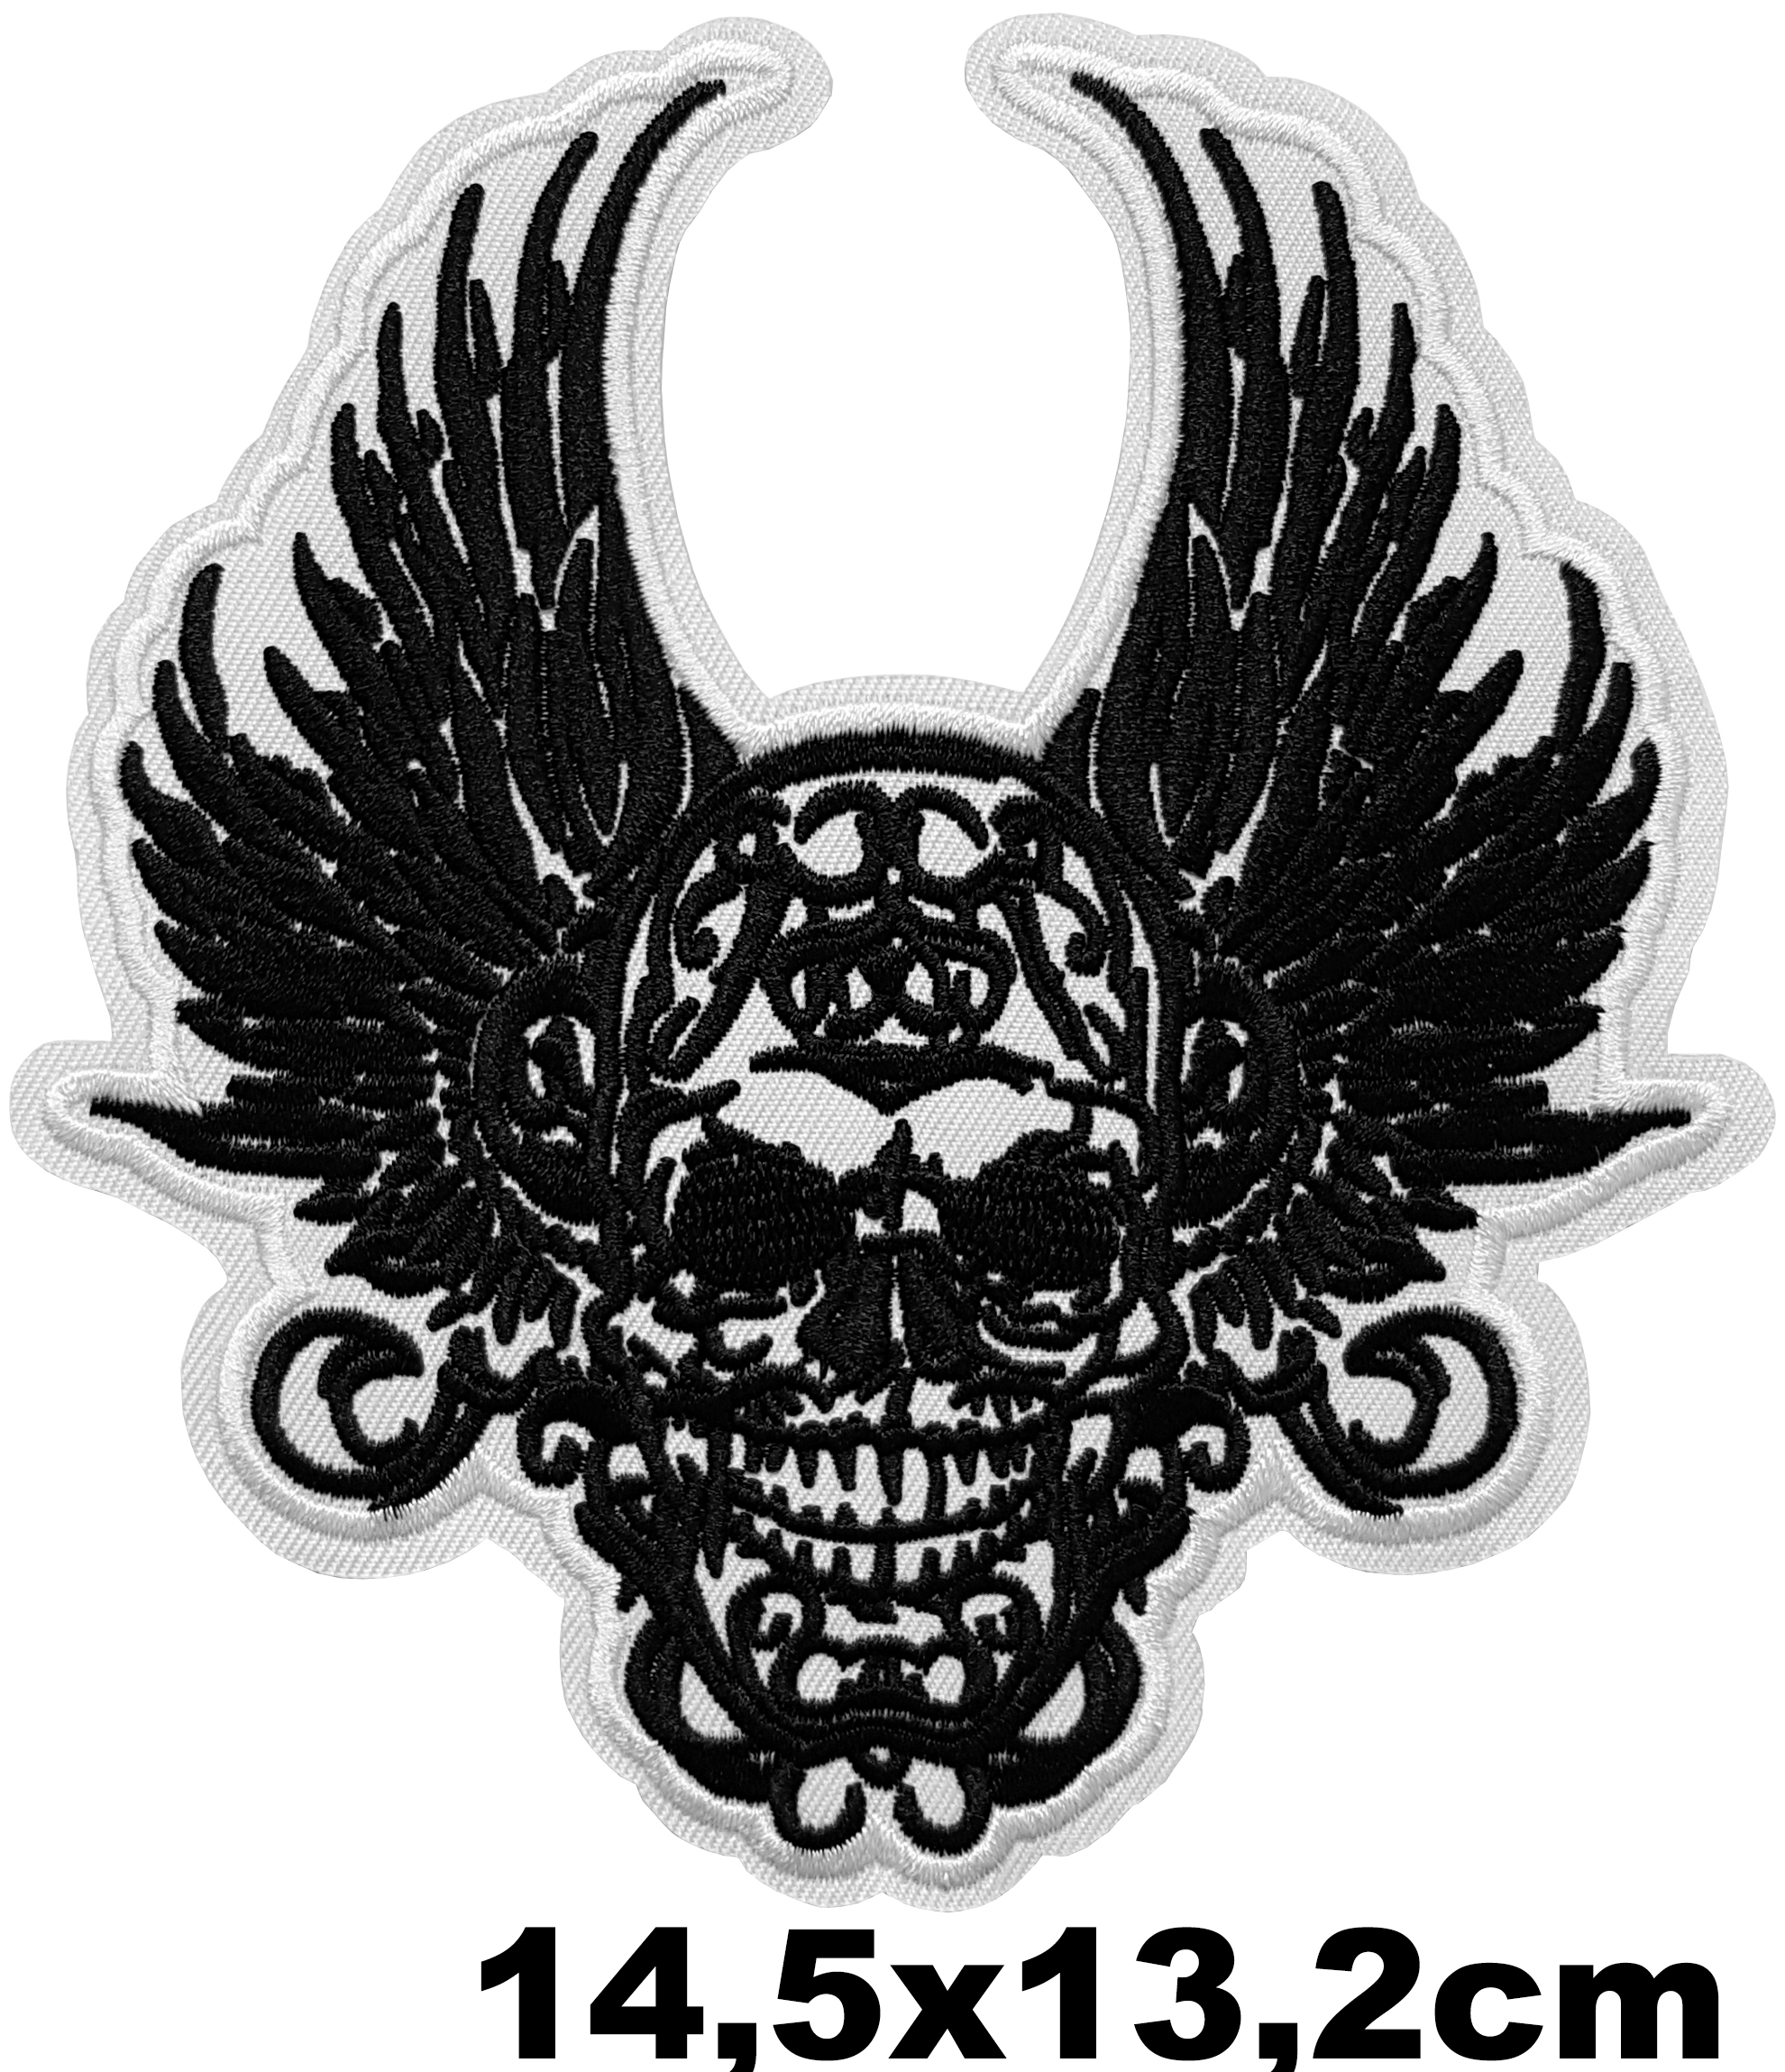 Grand Patch thermocollant Skull Ange Déchu - Symbole de Rébellion et Liberté